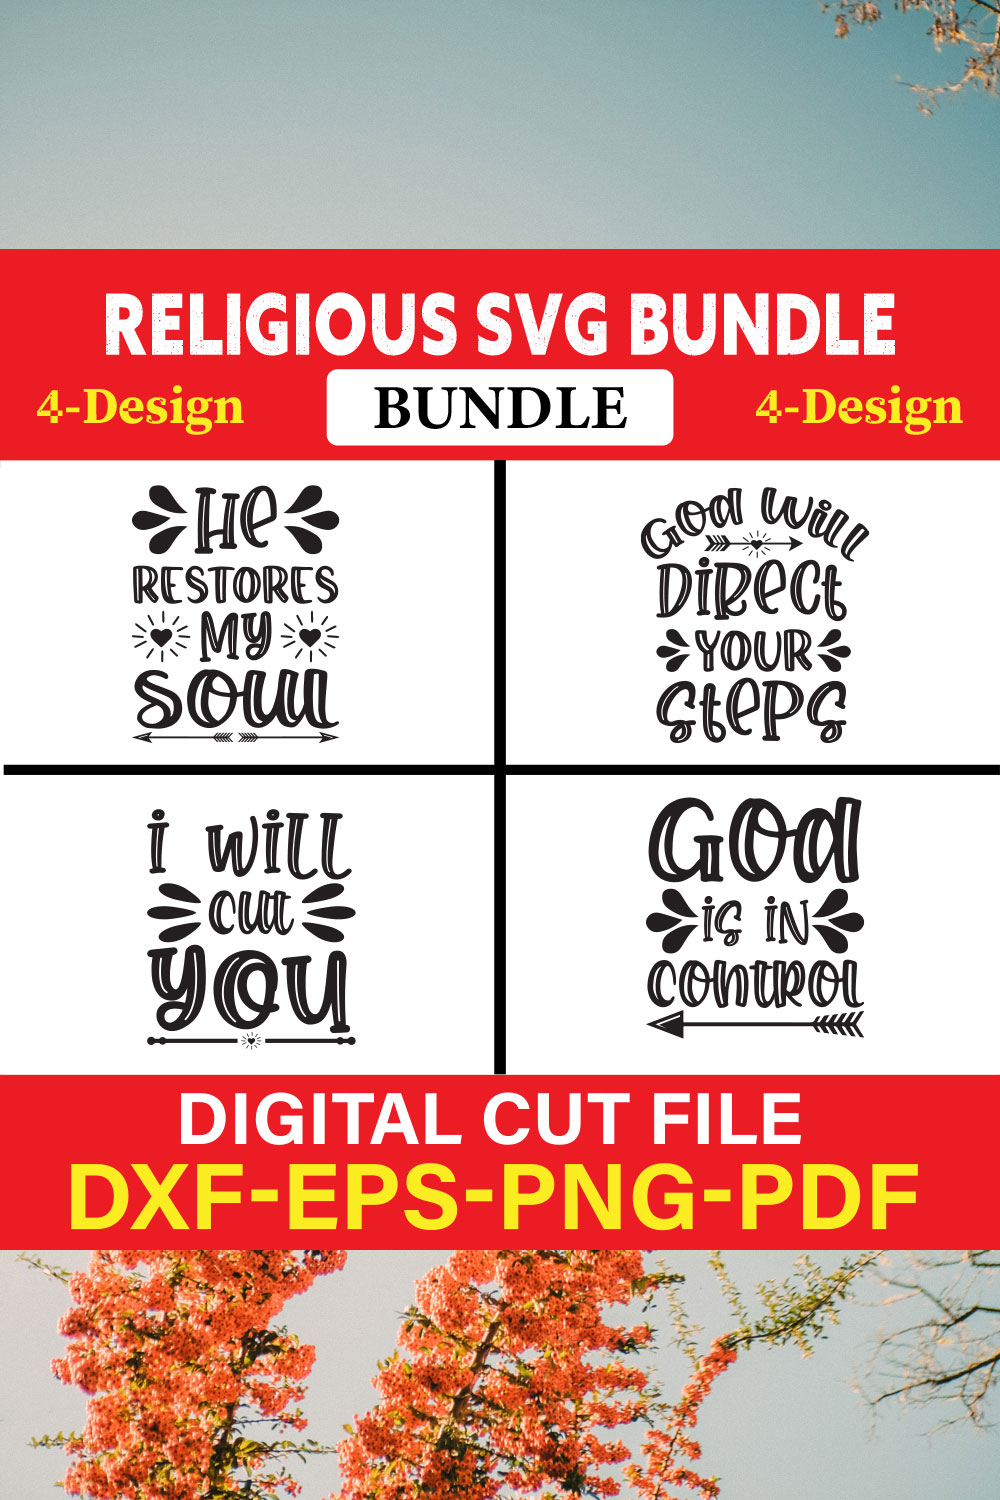 Religious T-shirt Design Bundle Vol-3 pinterest preview image.